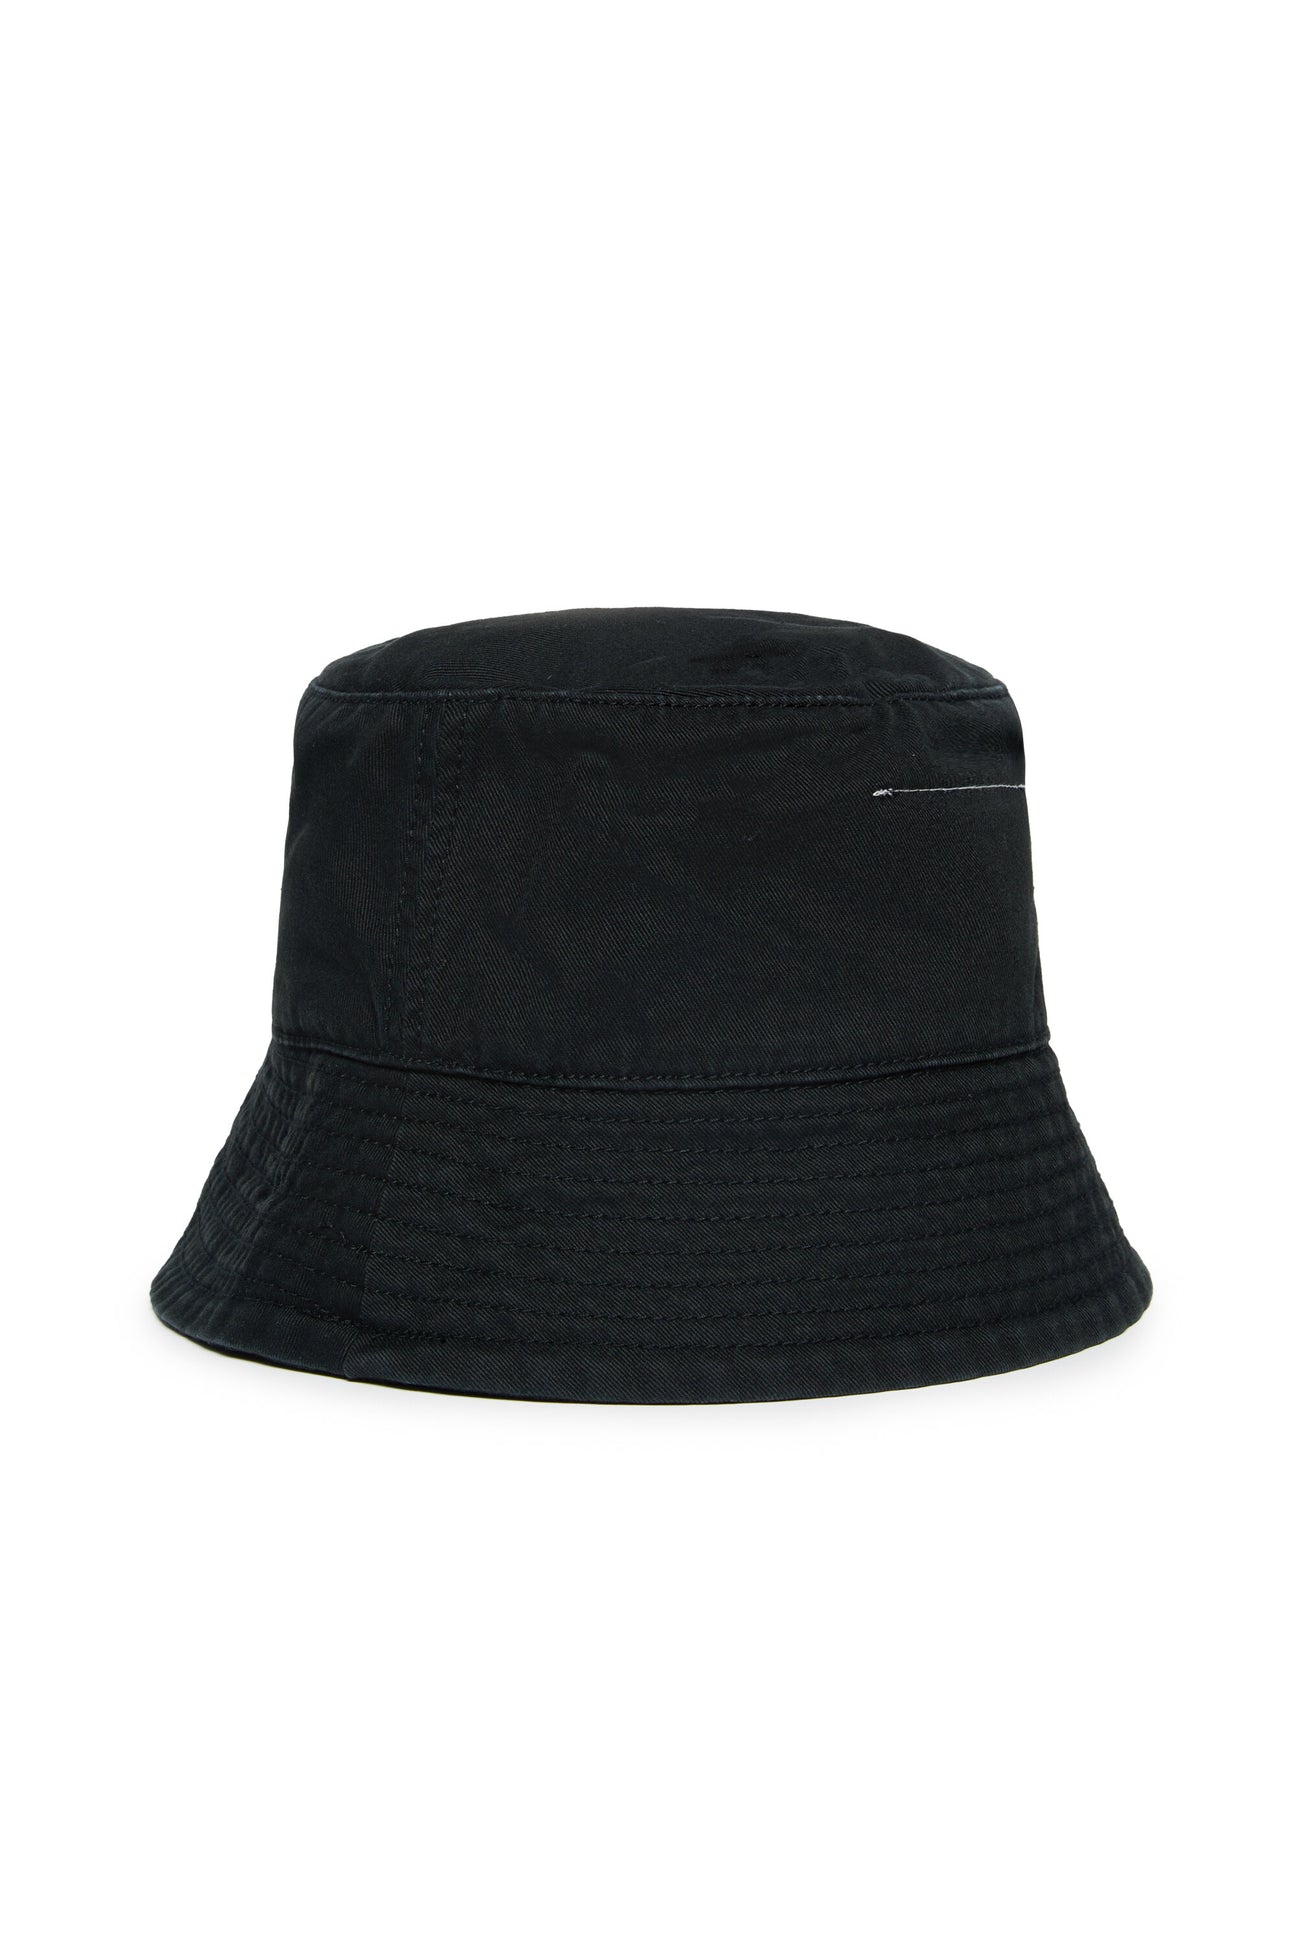 Sombrero de pescador con marca MM6 Sombrero de pescador con marca MM6